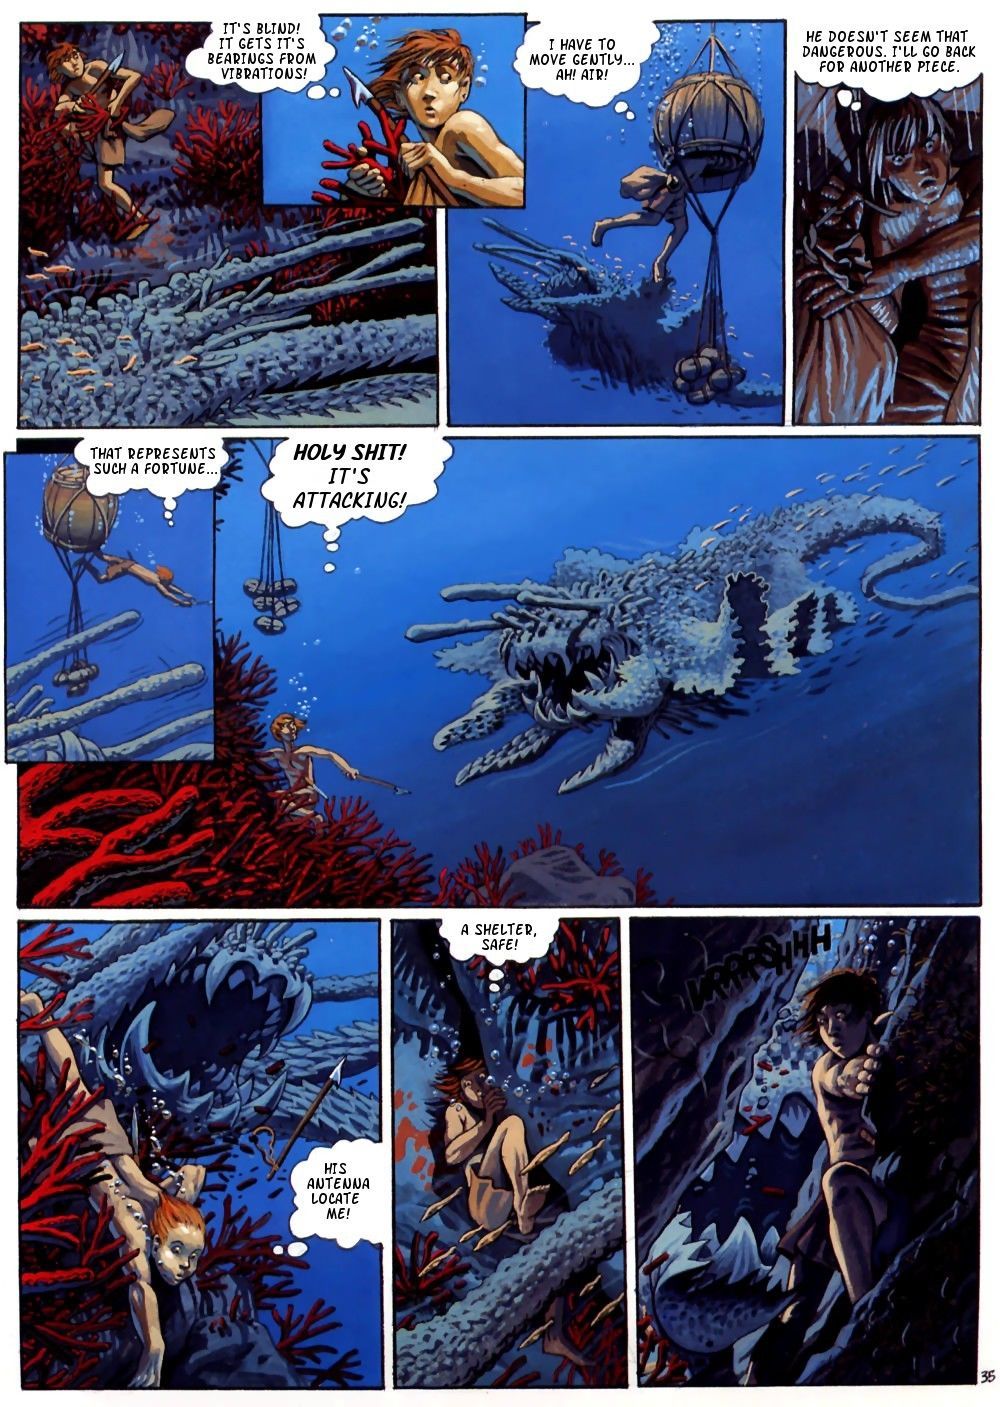 arleston mourier il incendi di askell #3: bloody corallo {jj} parte 2